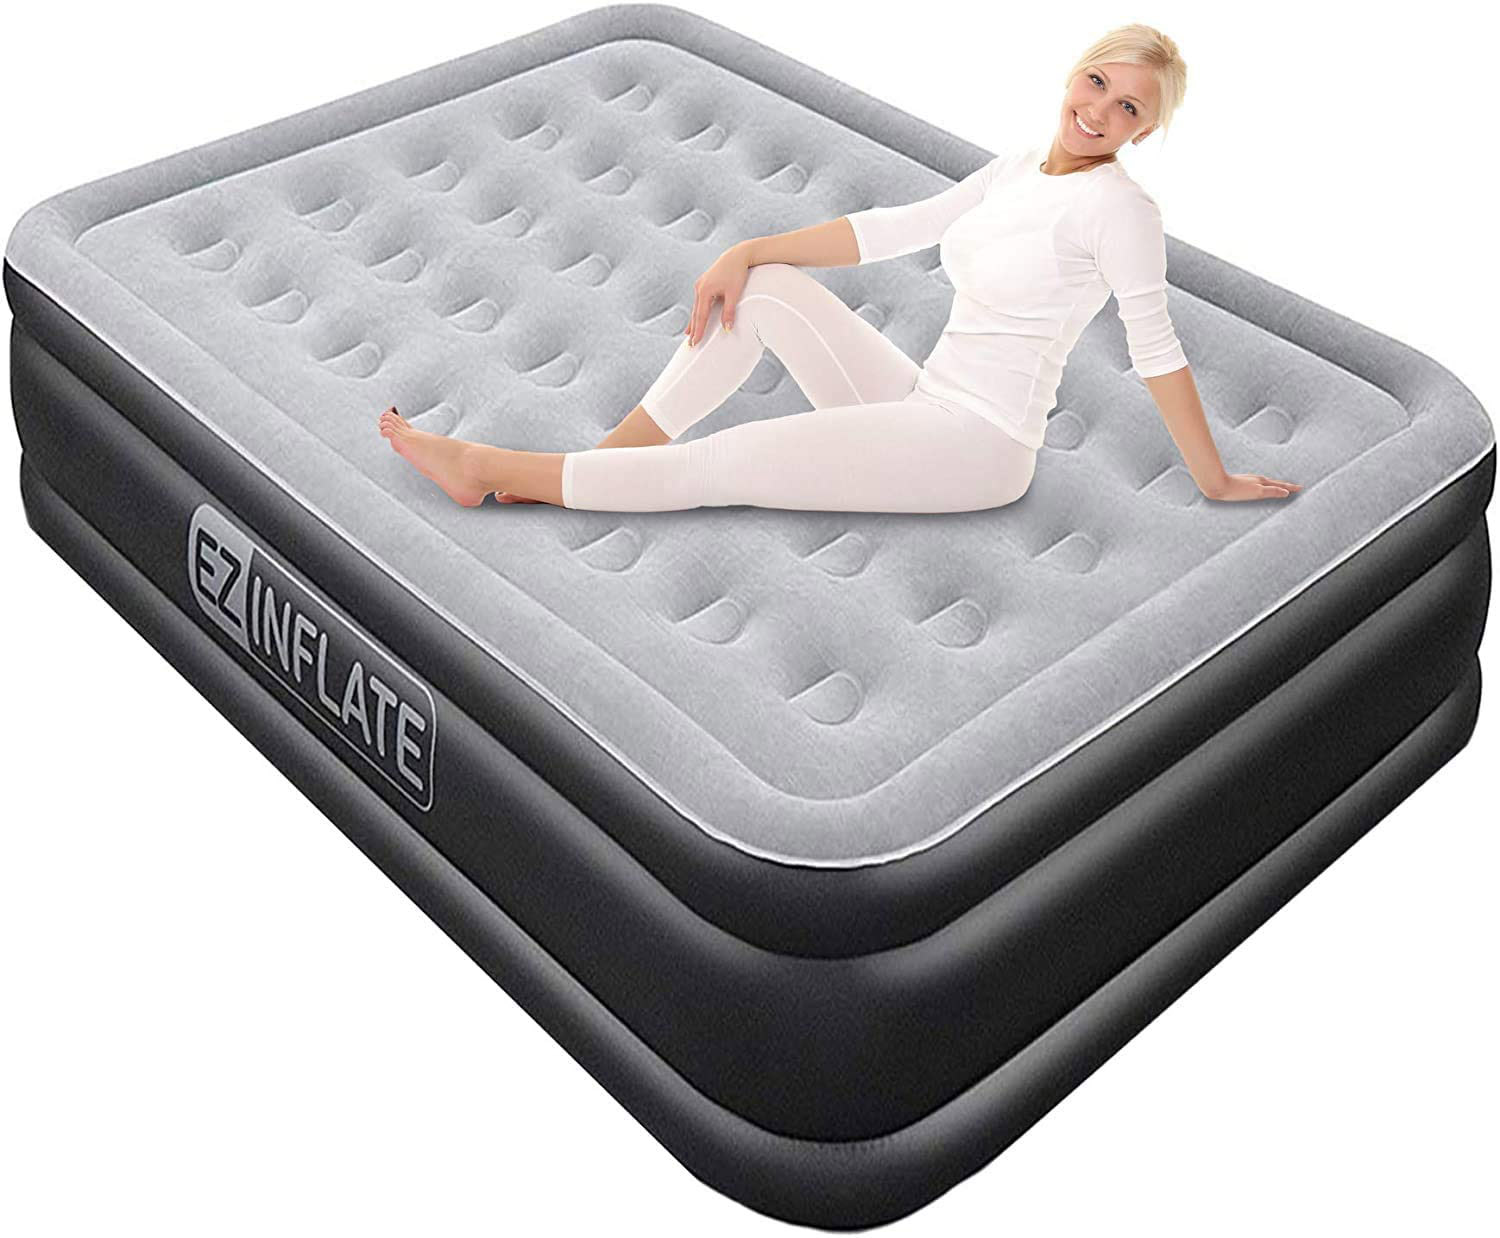 high quality camping air mattress